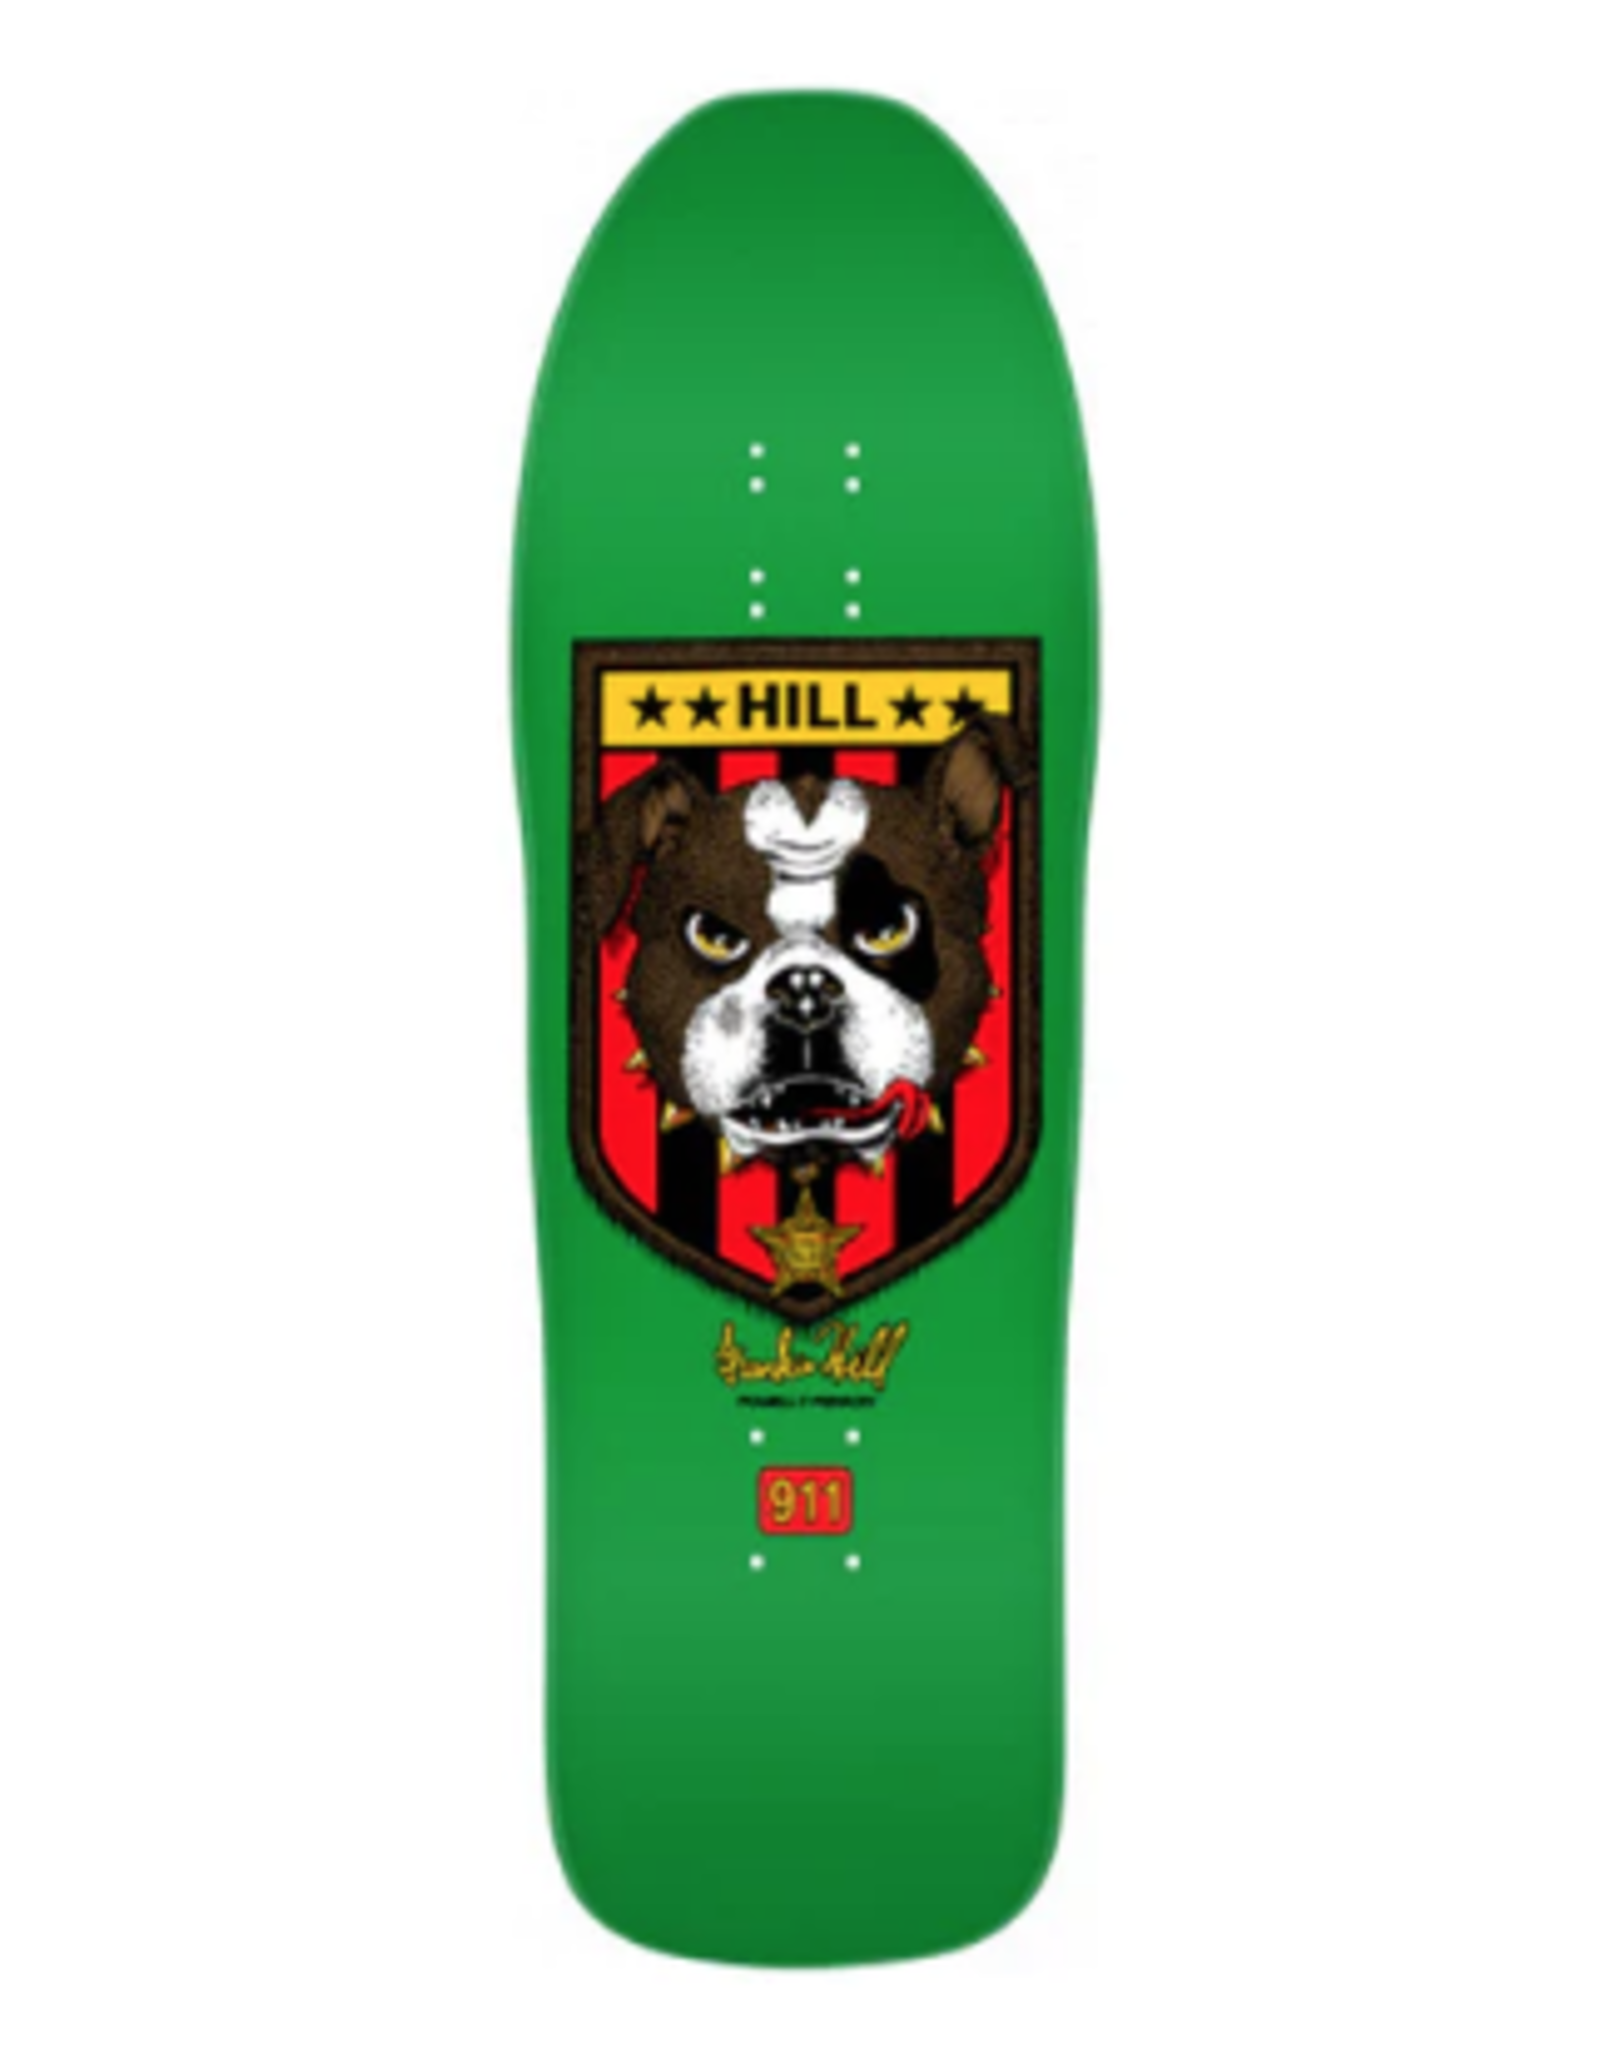 POWELL Powell Peralta Frankie Hill Bulldog Skateboard Deck Green - 10 X 31.5